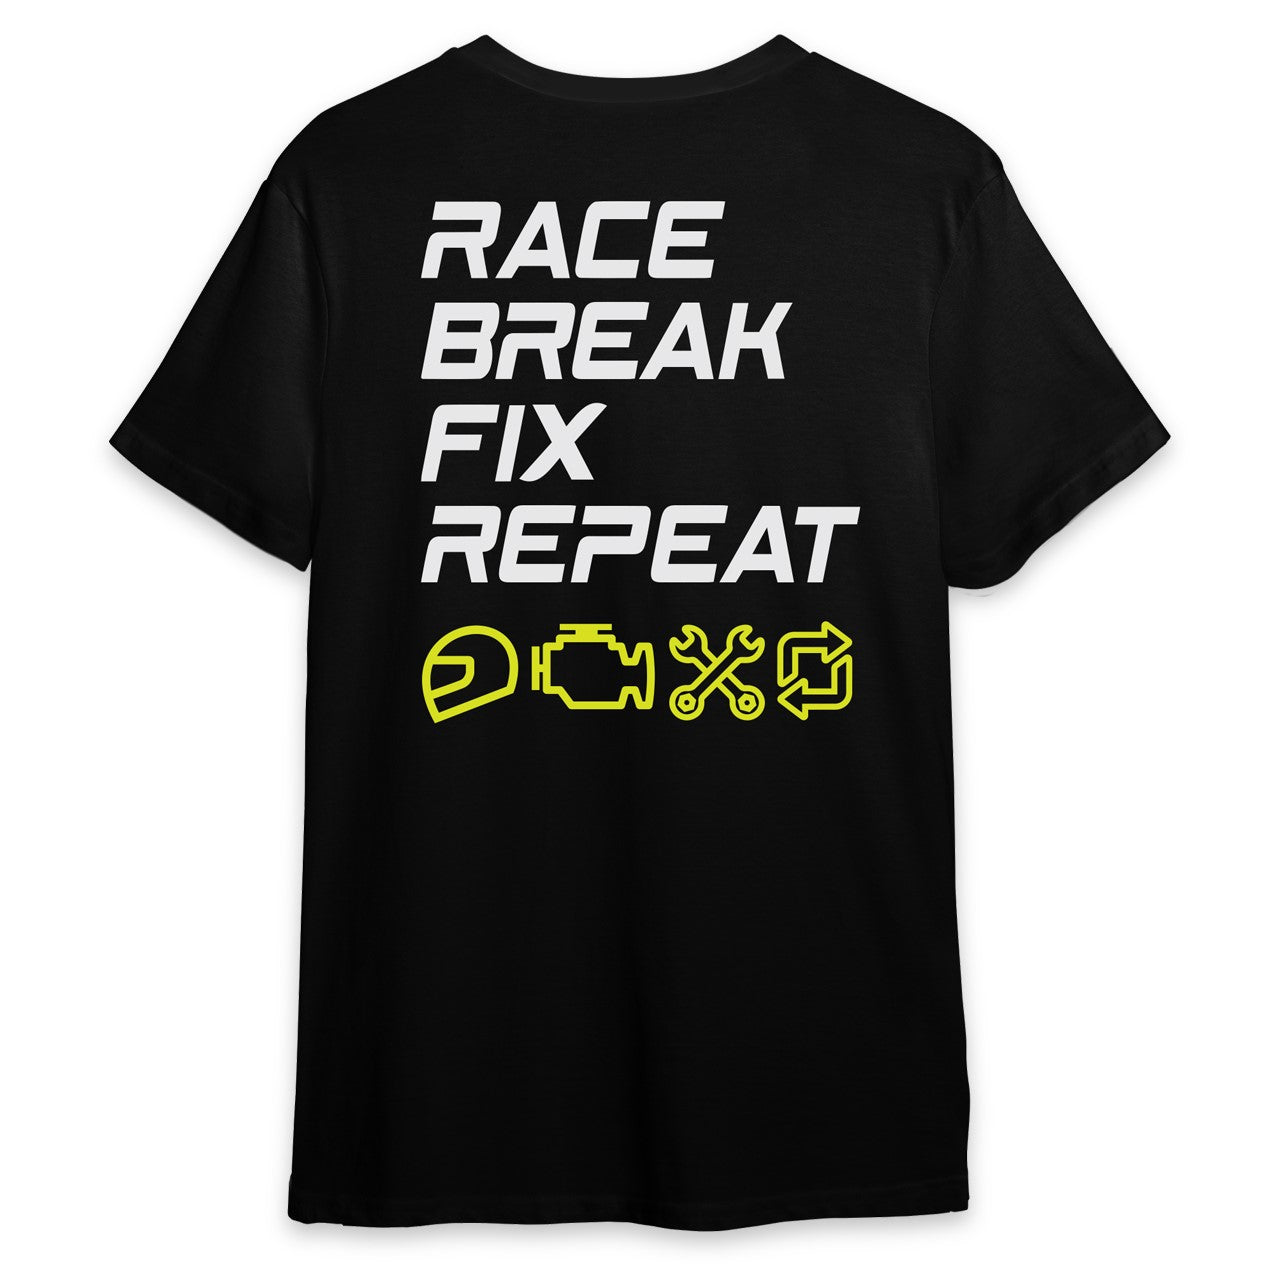 Race. Break. Fix. Repeat. Shirt